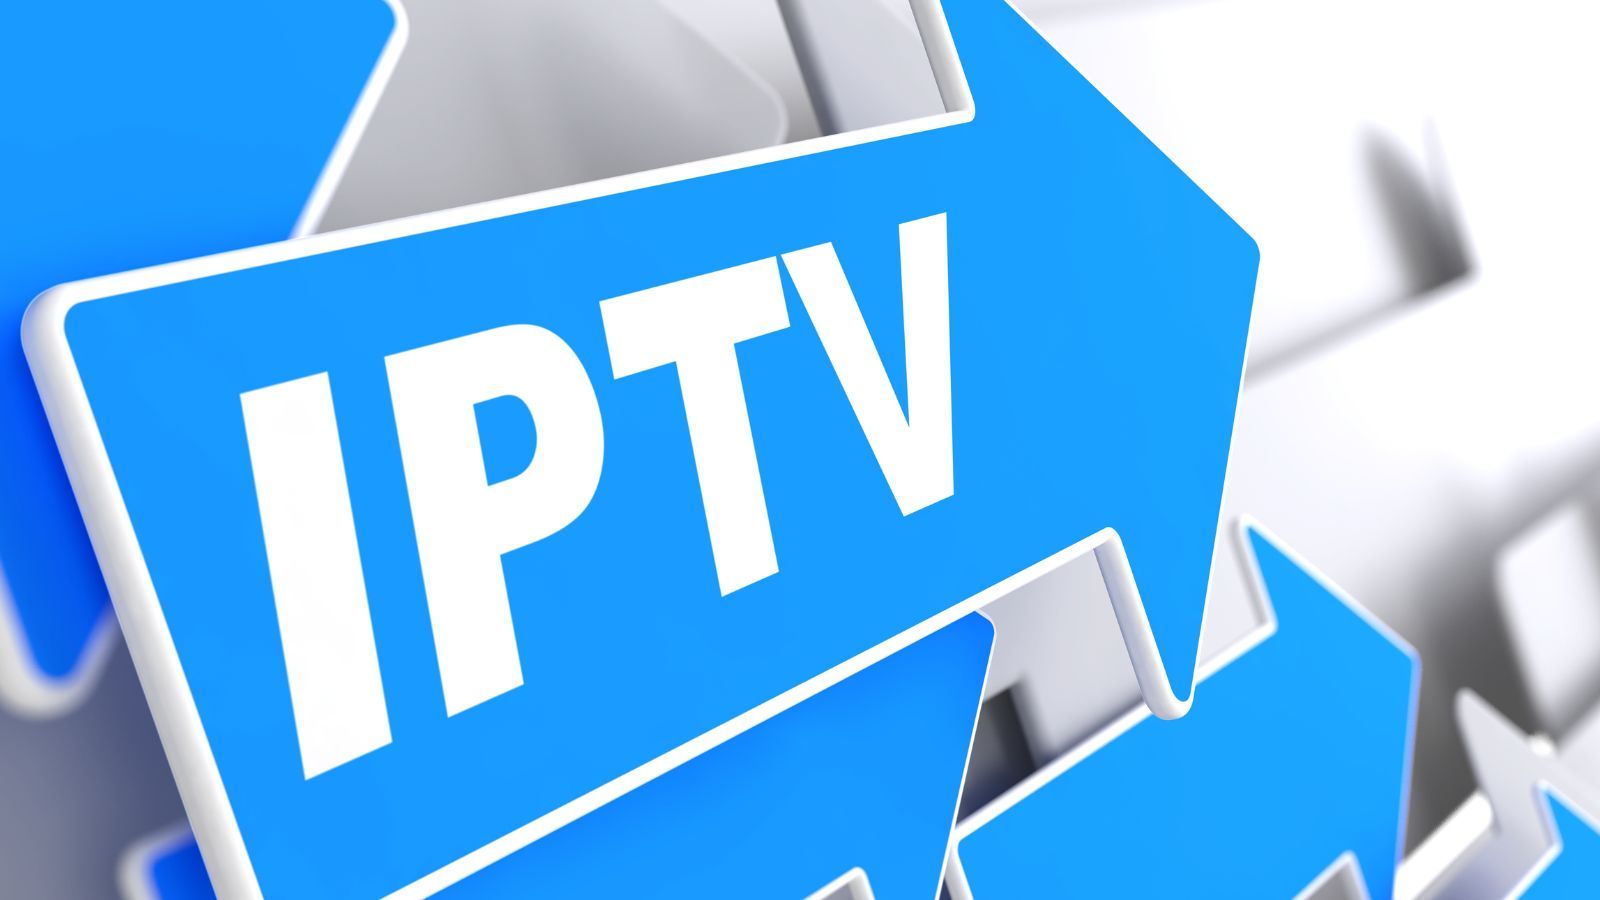 IPTV è FINITA, le nuove MULTE colpiscono gli utenti